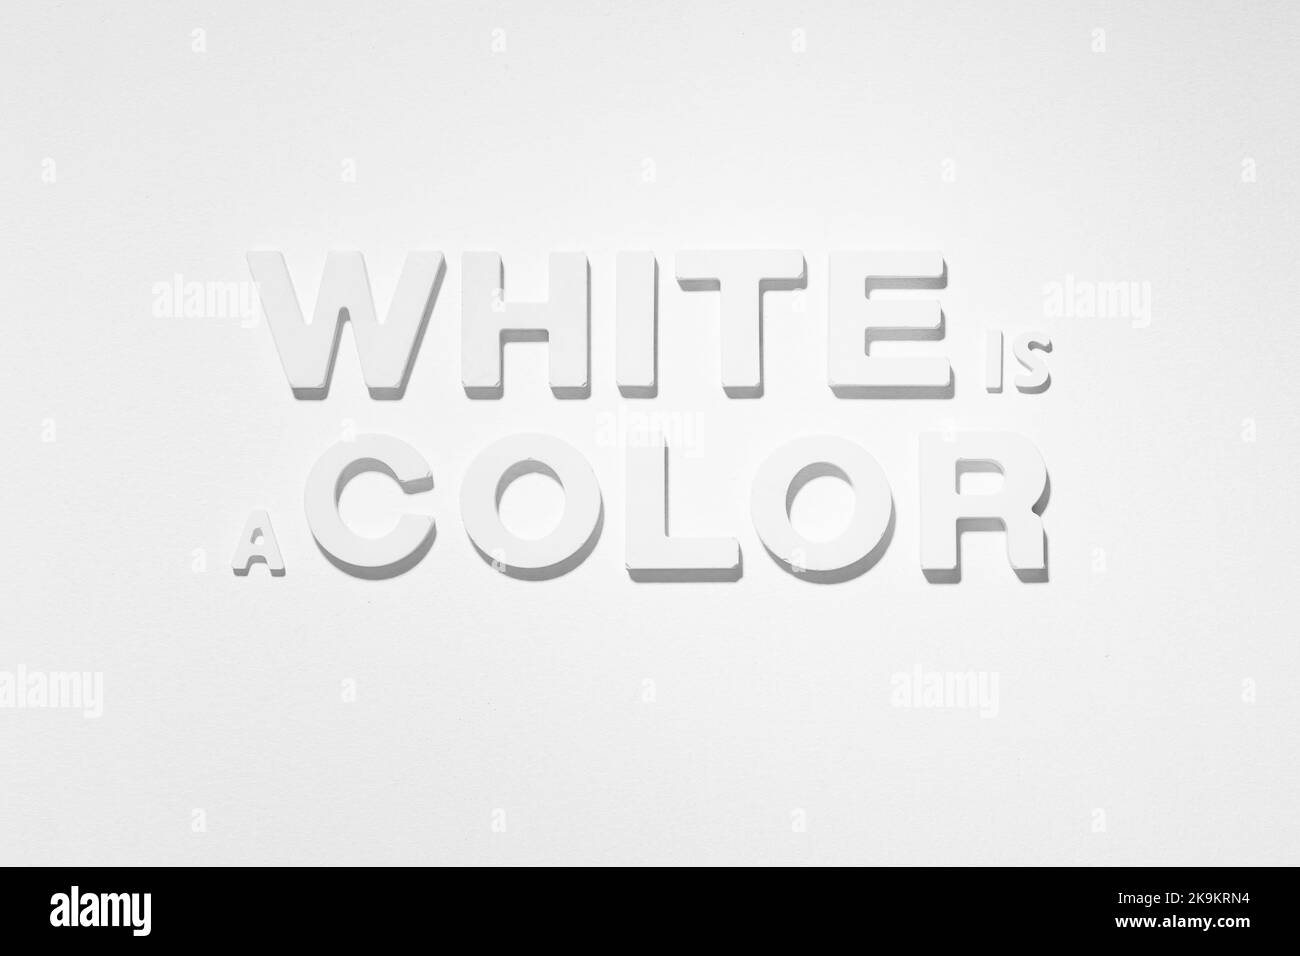 Weiß ist Ein Farb-Satz aus geformten Buchstaben auf weißem Hintergrund. Schwarzweiß-Fotografie Stockfoto